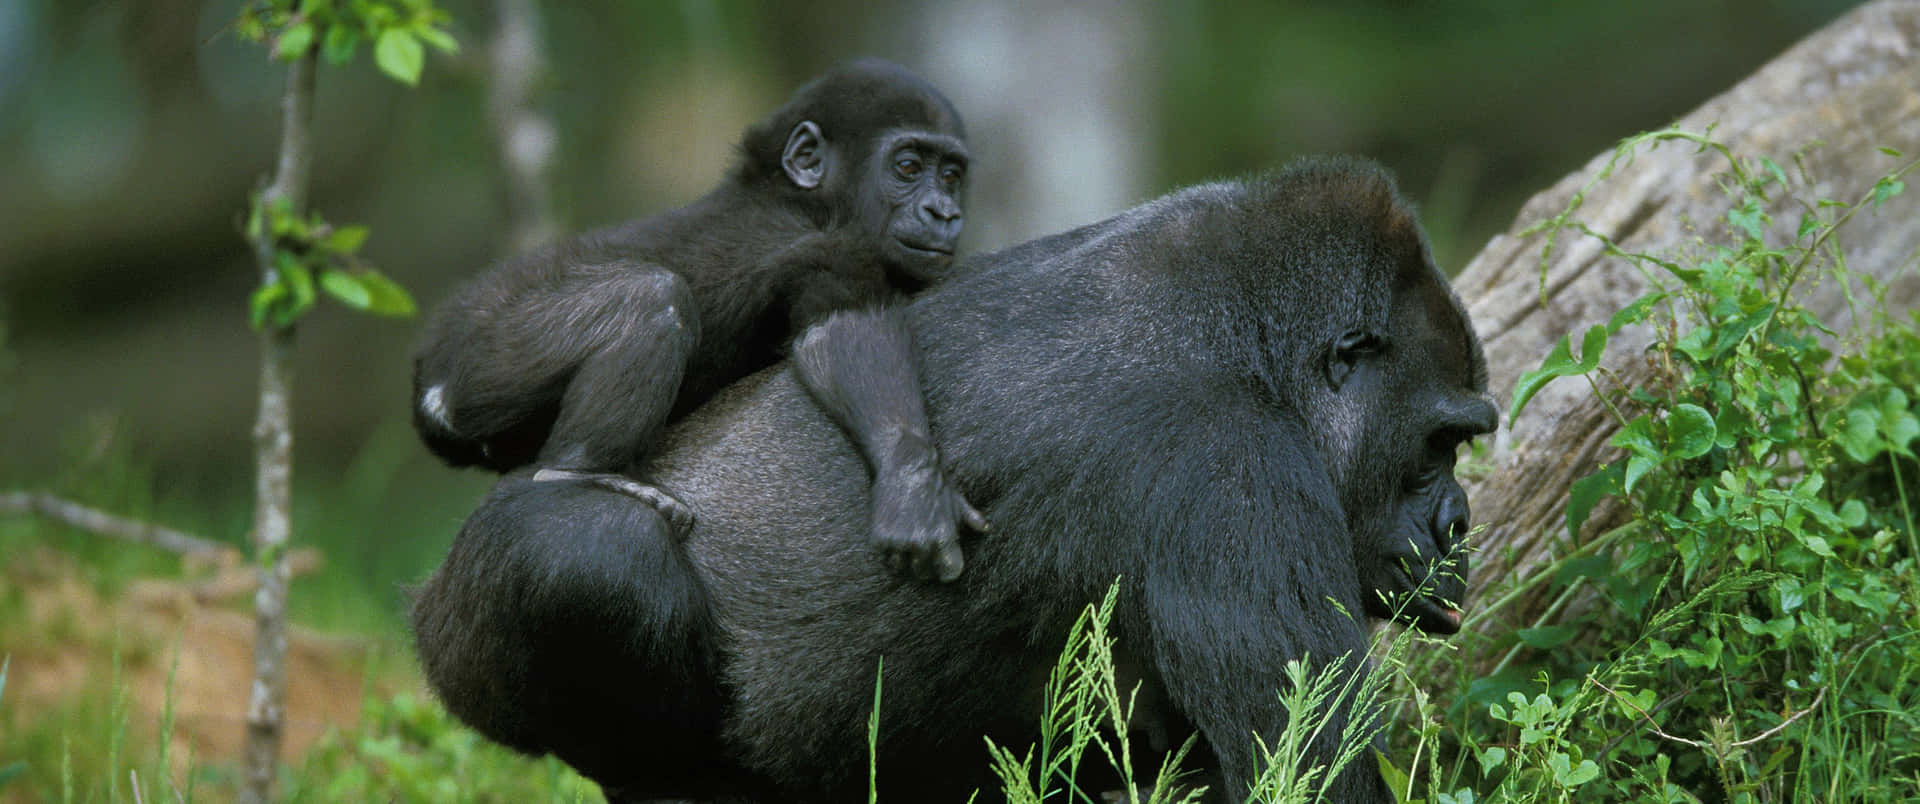 3440x1440phintergrundbild Von Einer Gorillamutter, Die Ihr Baby Trägt